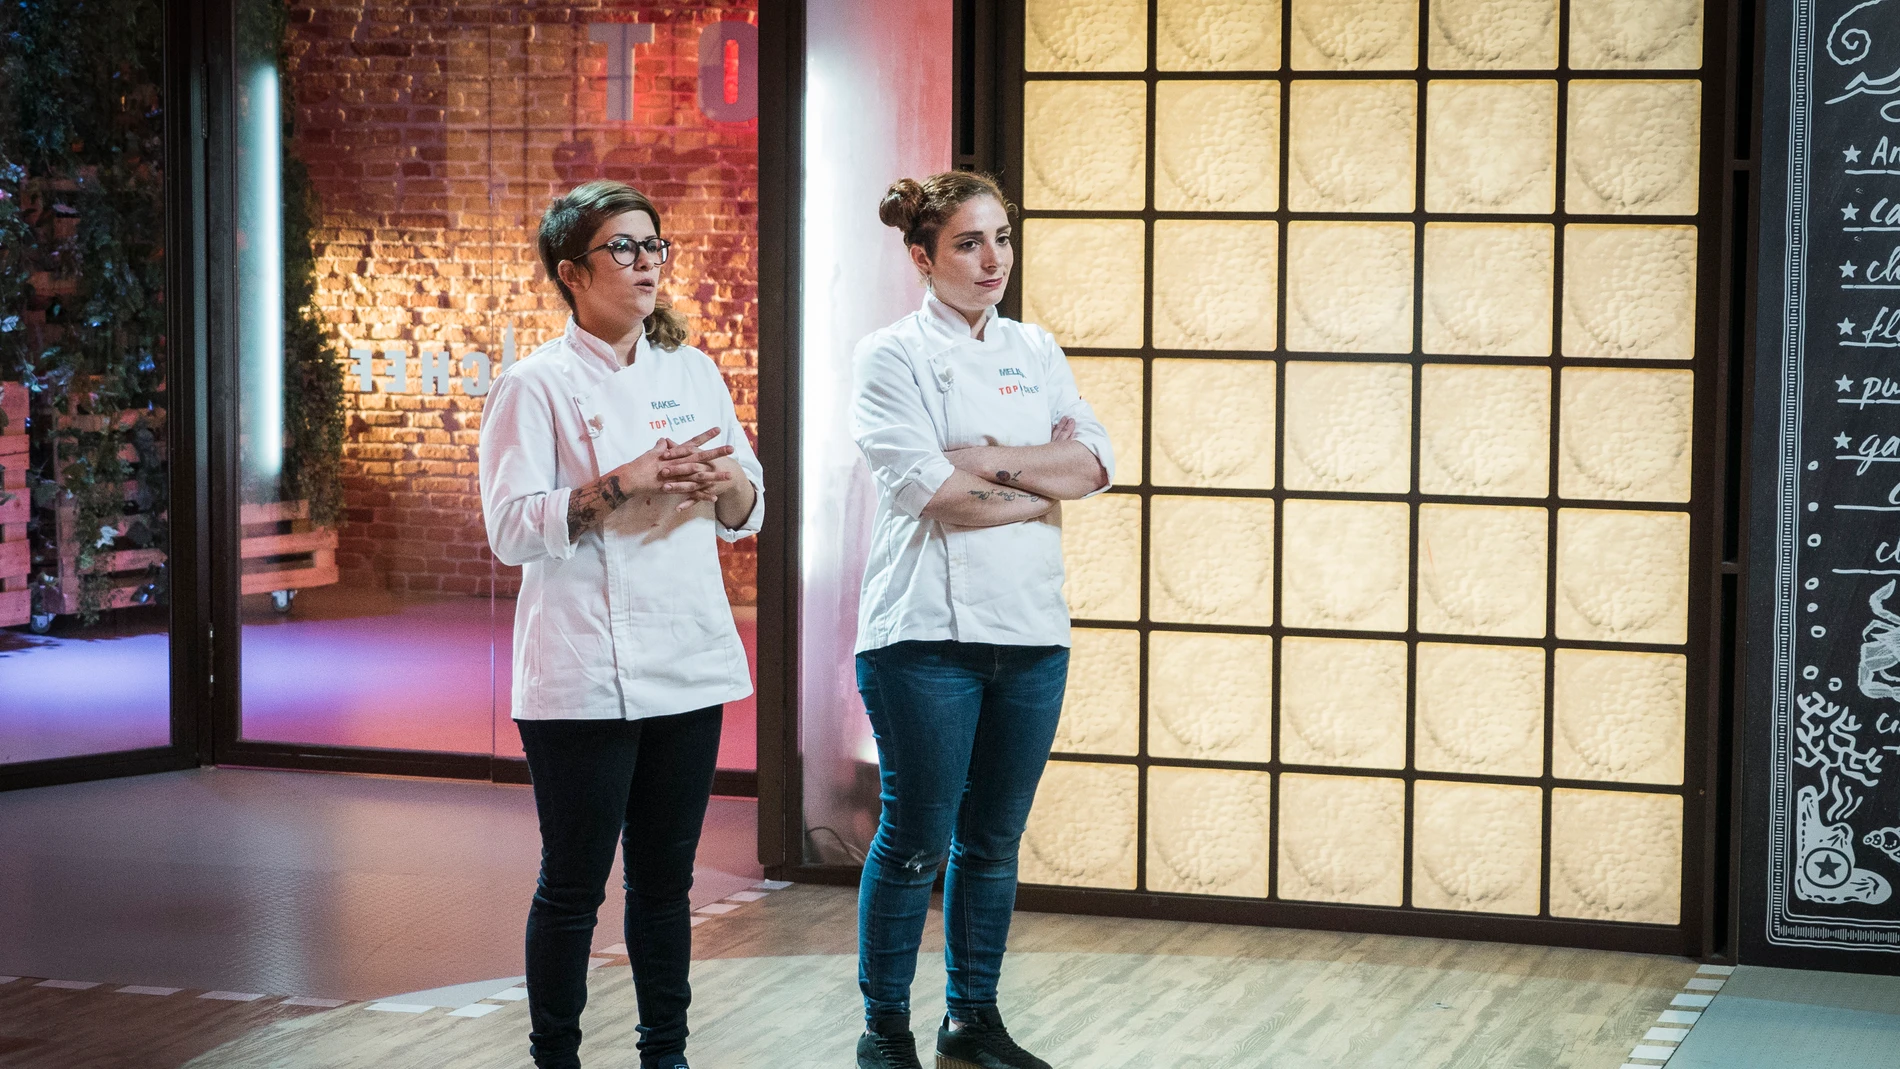 Melissa o Rakel, solo una de ellas pasará a la semifinal de ‘Top Chef’